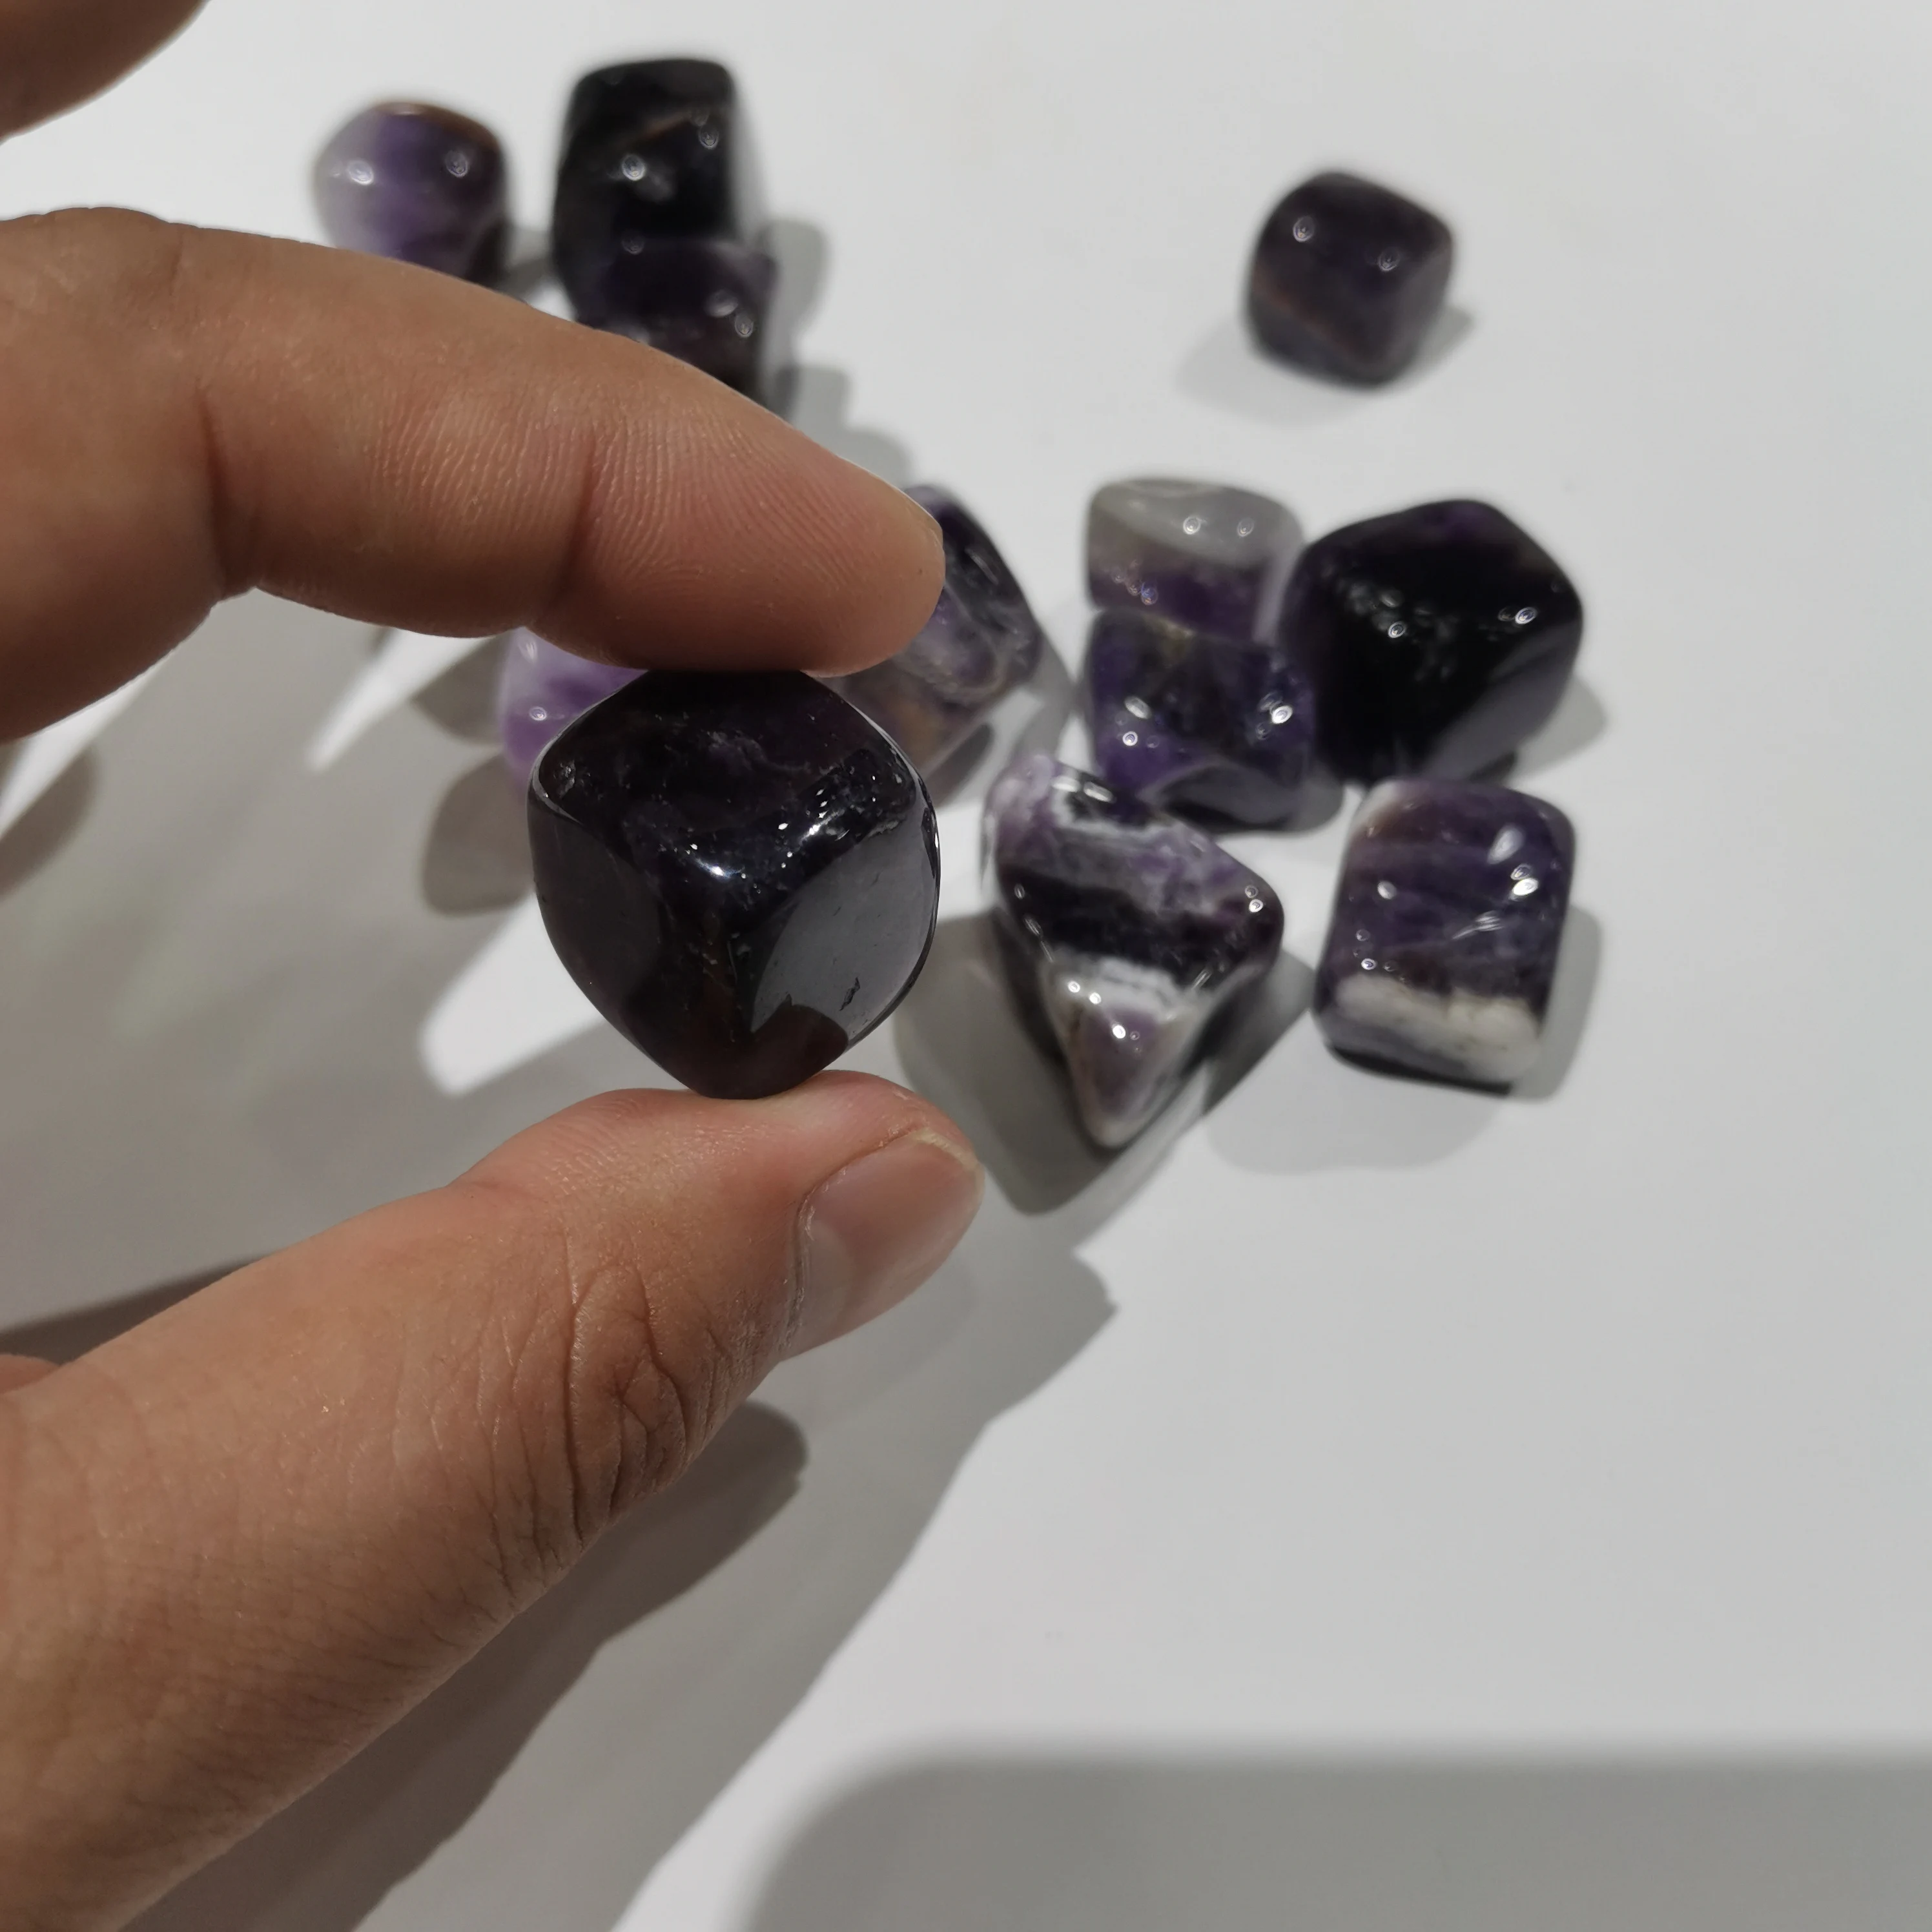 Tovarniško debelo 100 g naravnih sanje ametist kocka gramoz meditacija zdravljenje čakre aura quartz crystal gramoz